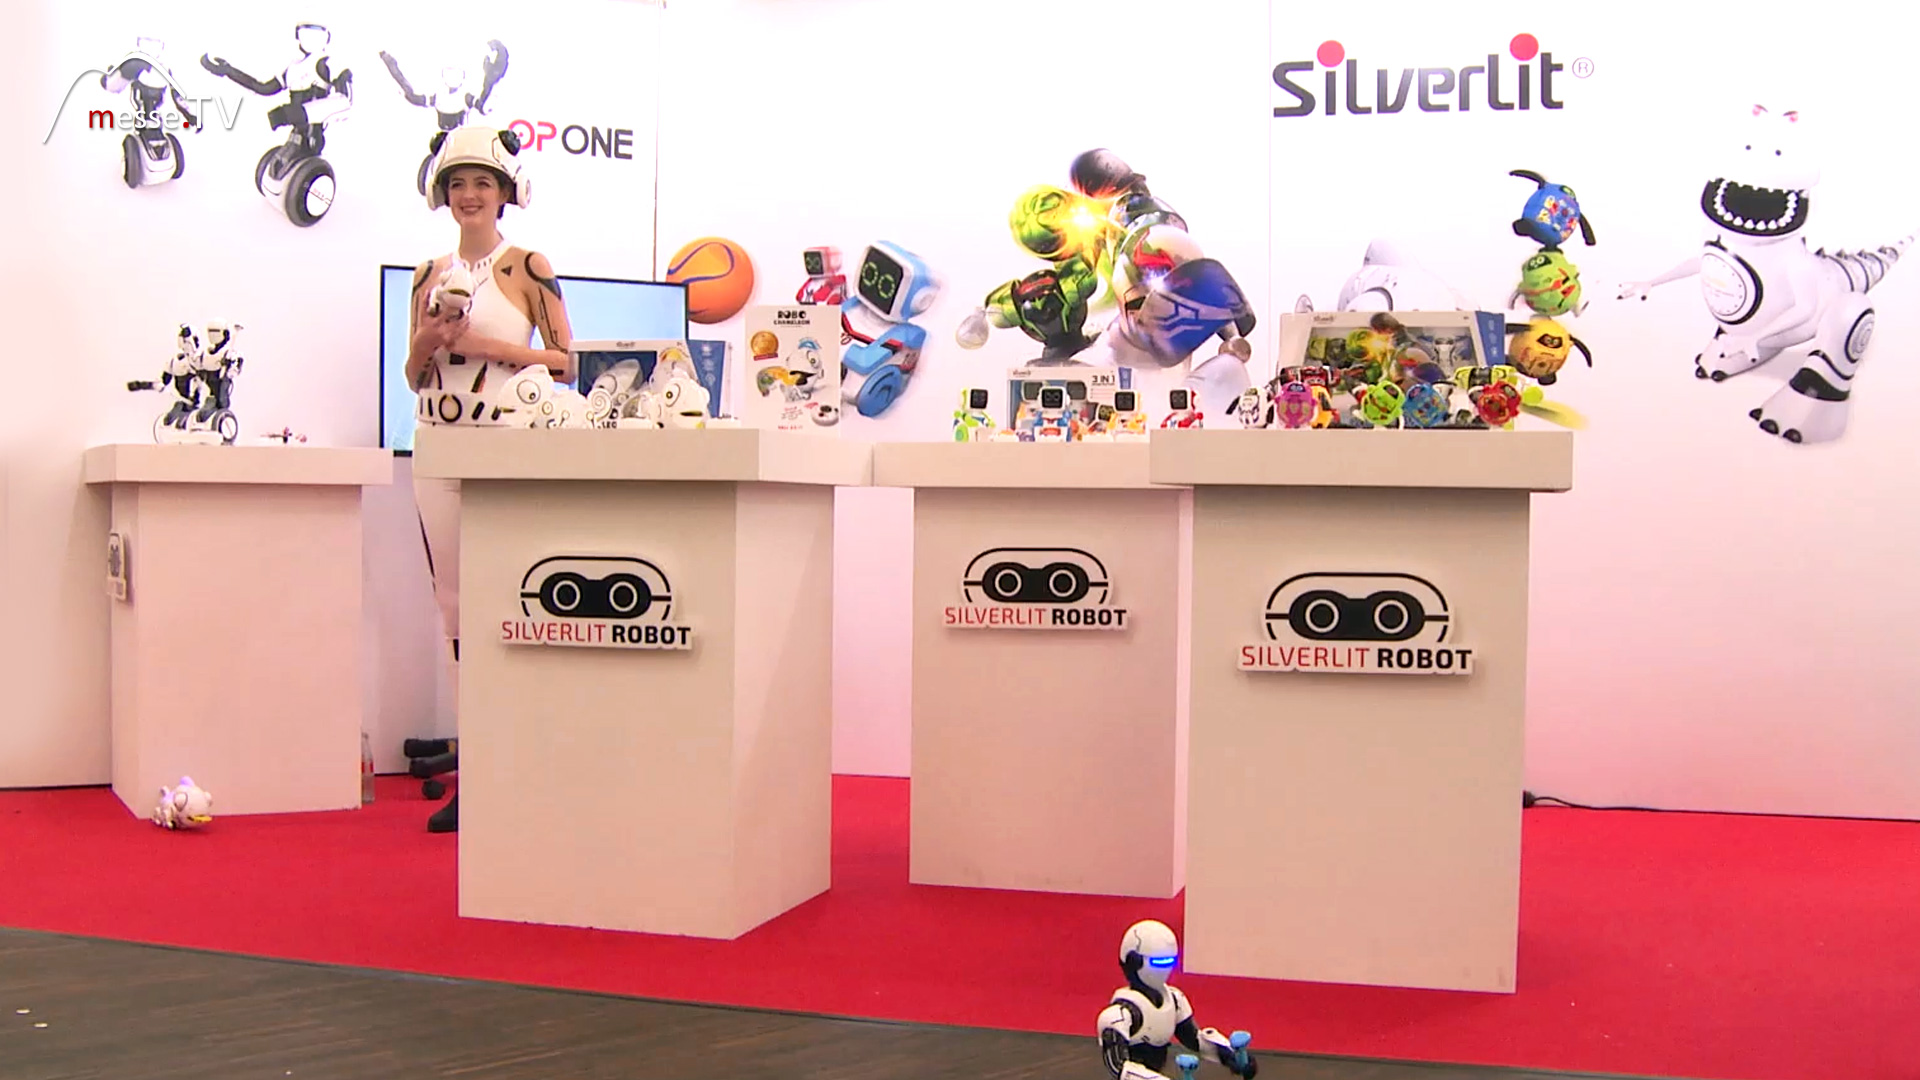 Silverlit toy robot Spielwarenmesse 2018 Nuremberg fair